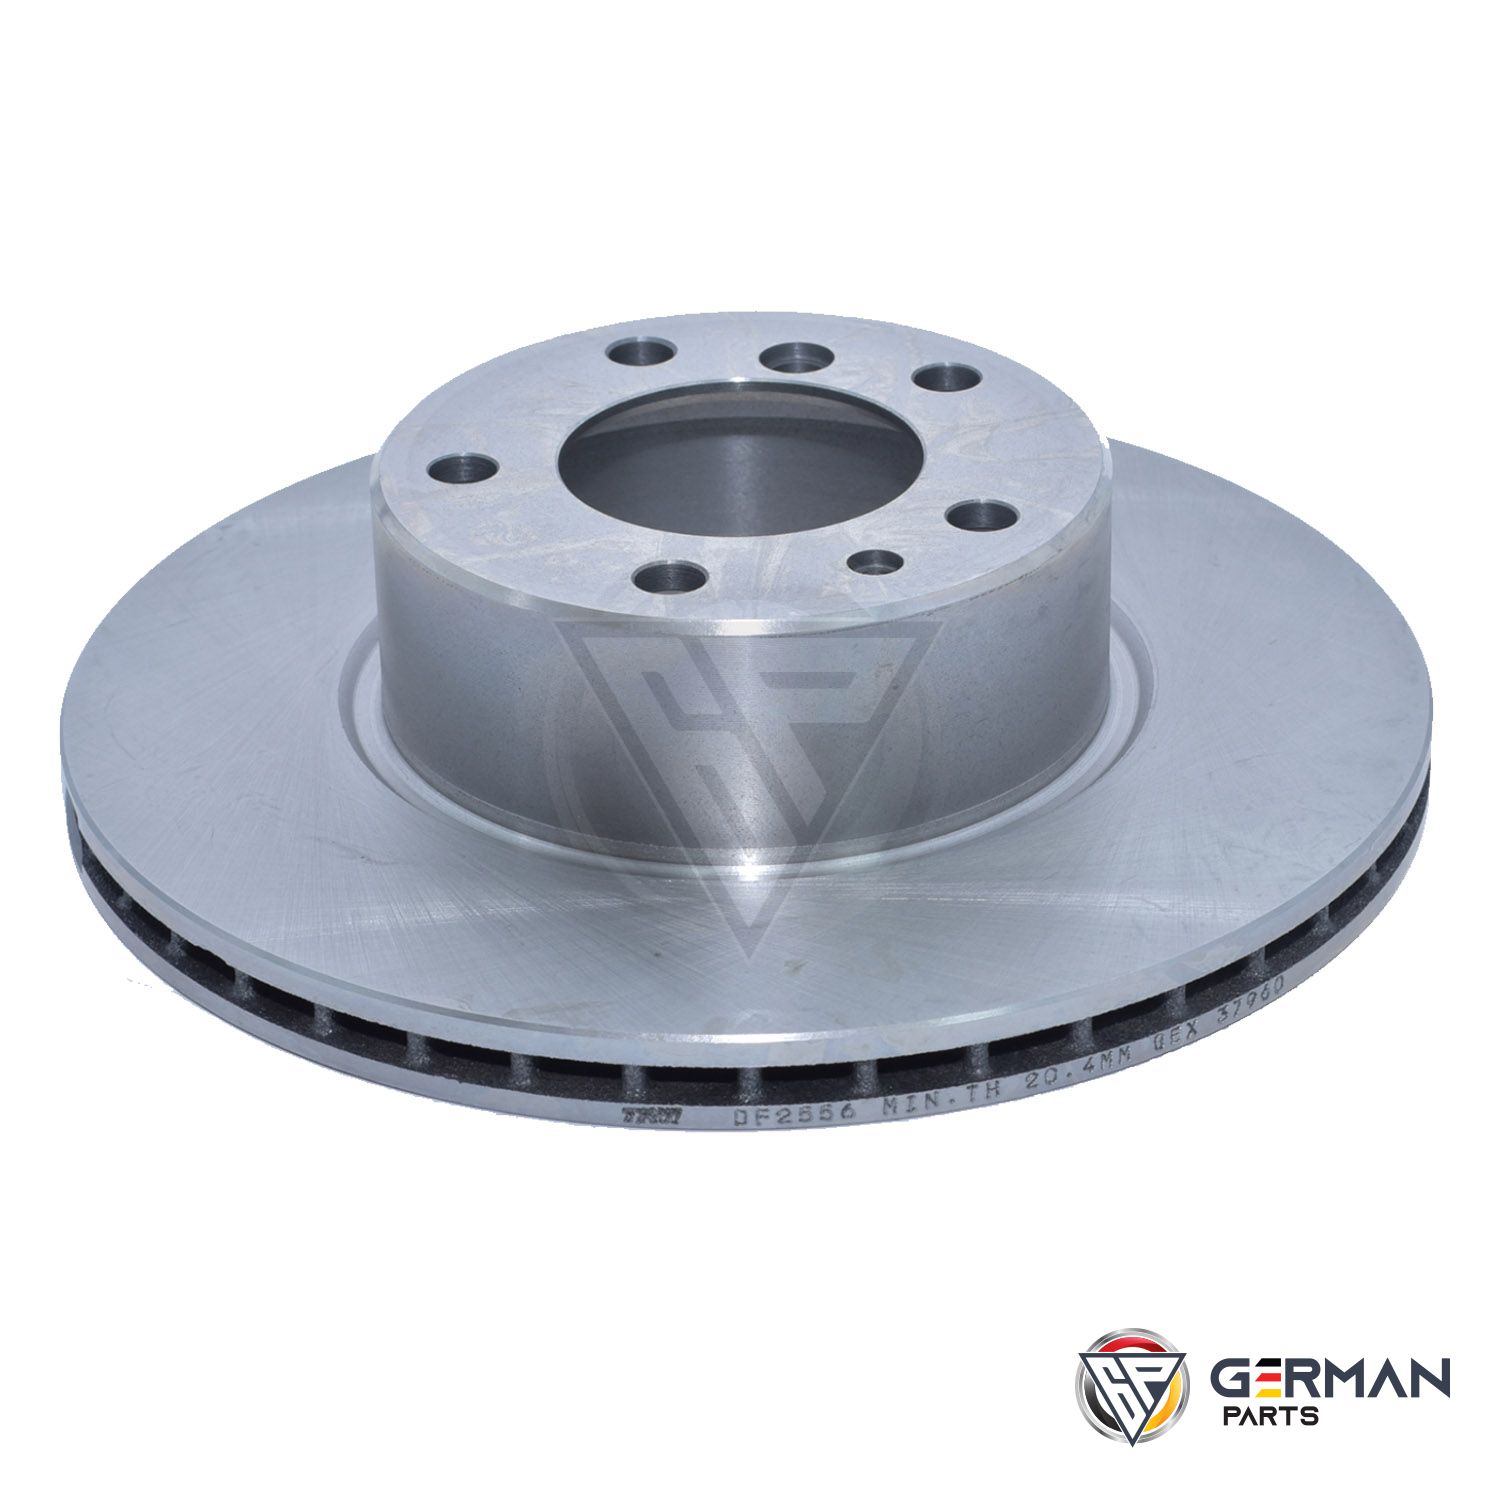 Buy TRW Front Brake Disc 34111160936 - German Parts